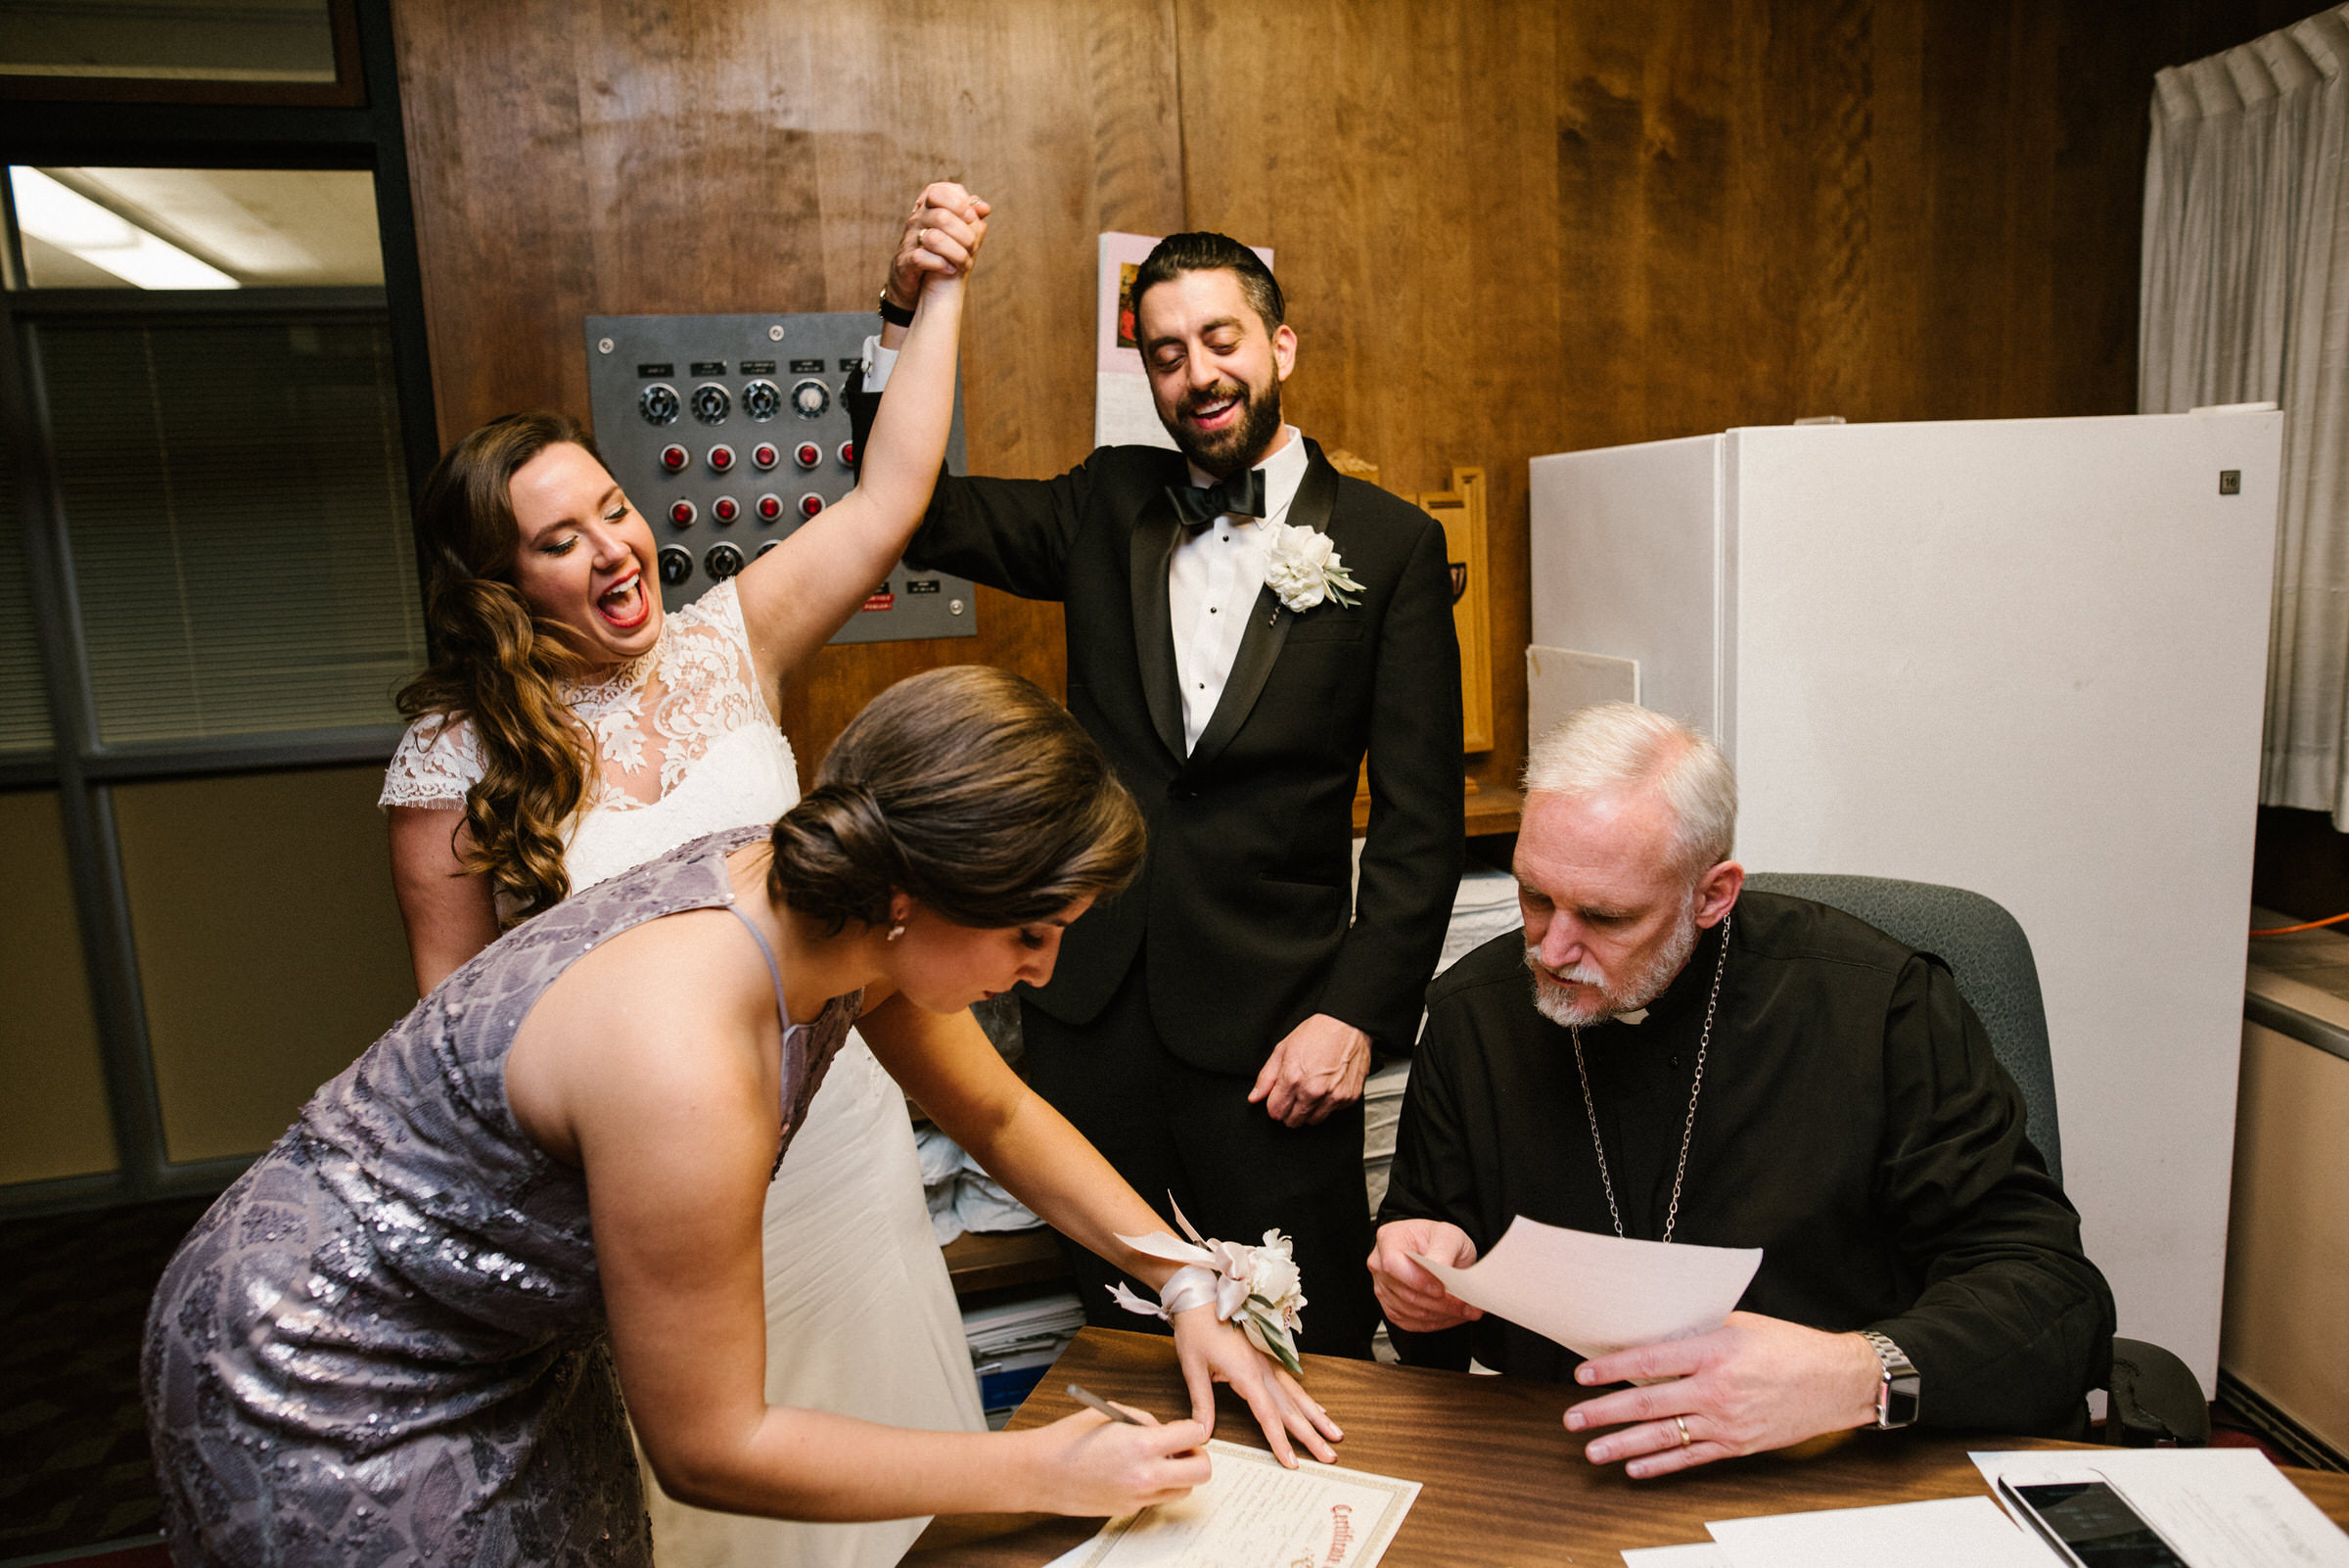 A Greek Orthodox wedding at St Demetrios in Seattle